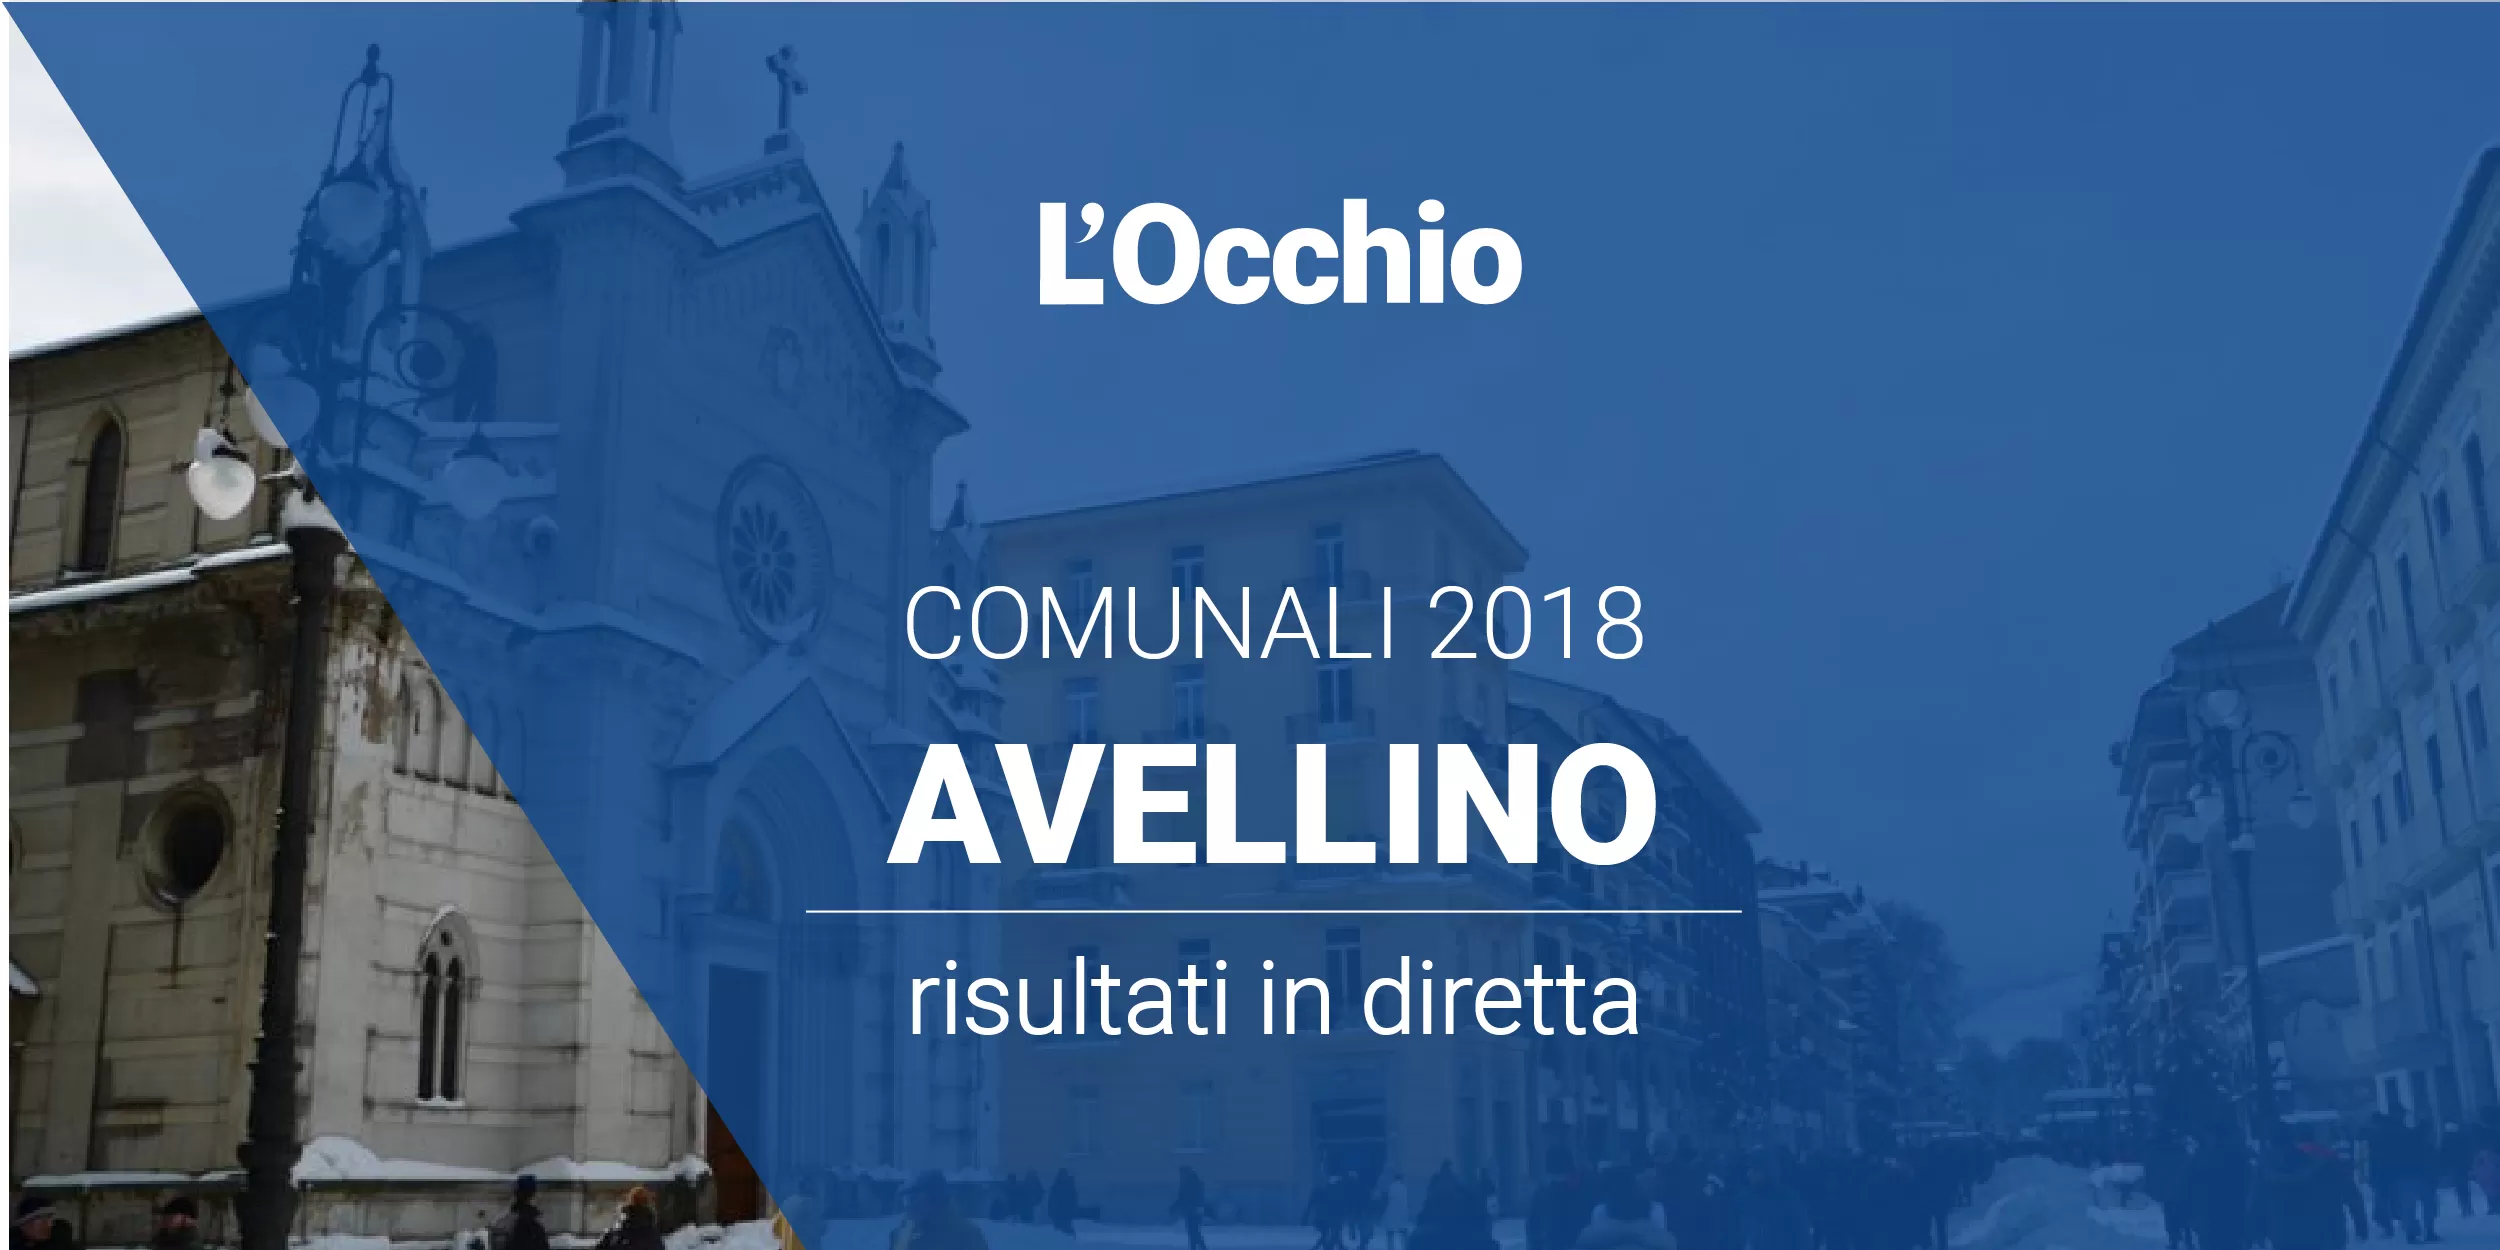 I risultati delle elzioni comunali 2018 ad Avellino in diretta